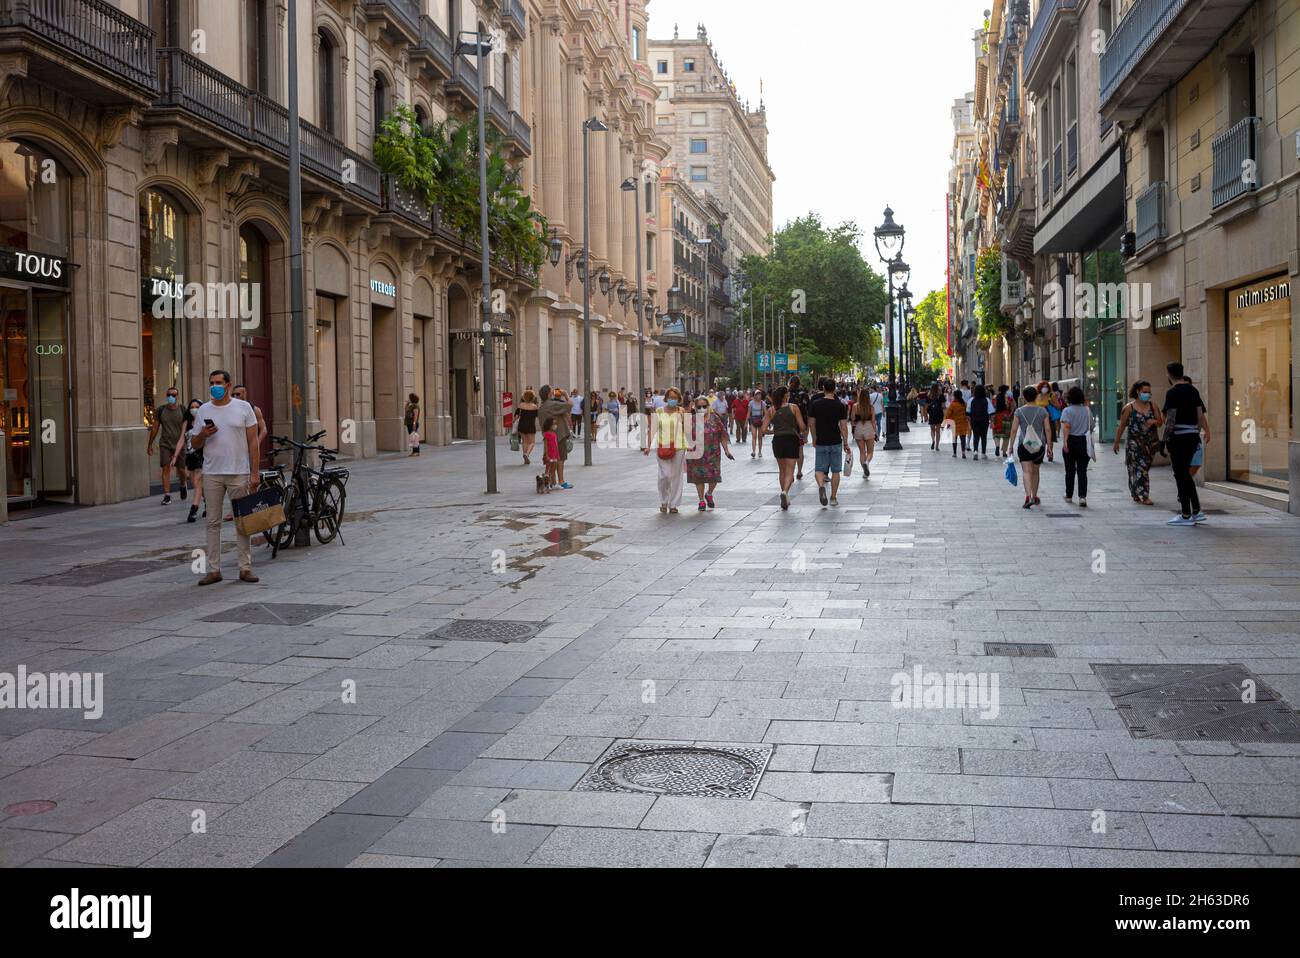 les touristes marchent la célèbre rue de la rambla à barcelone, en espagne. la rue la plus populaire de barcelone Banque D'Images